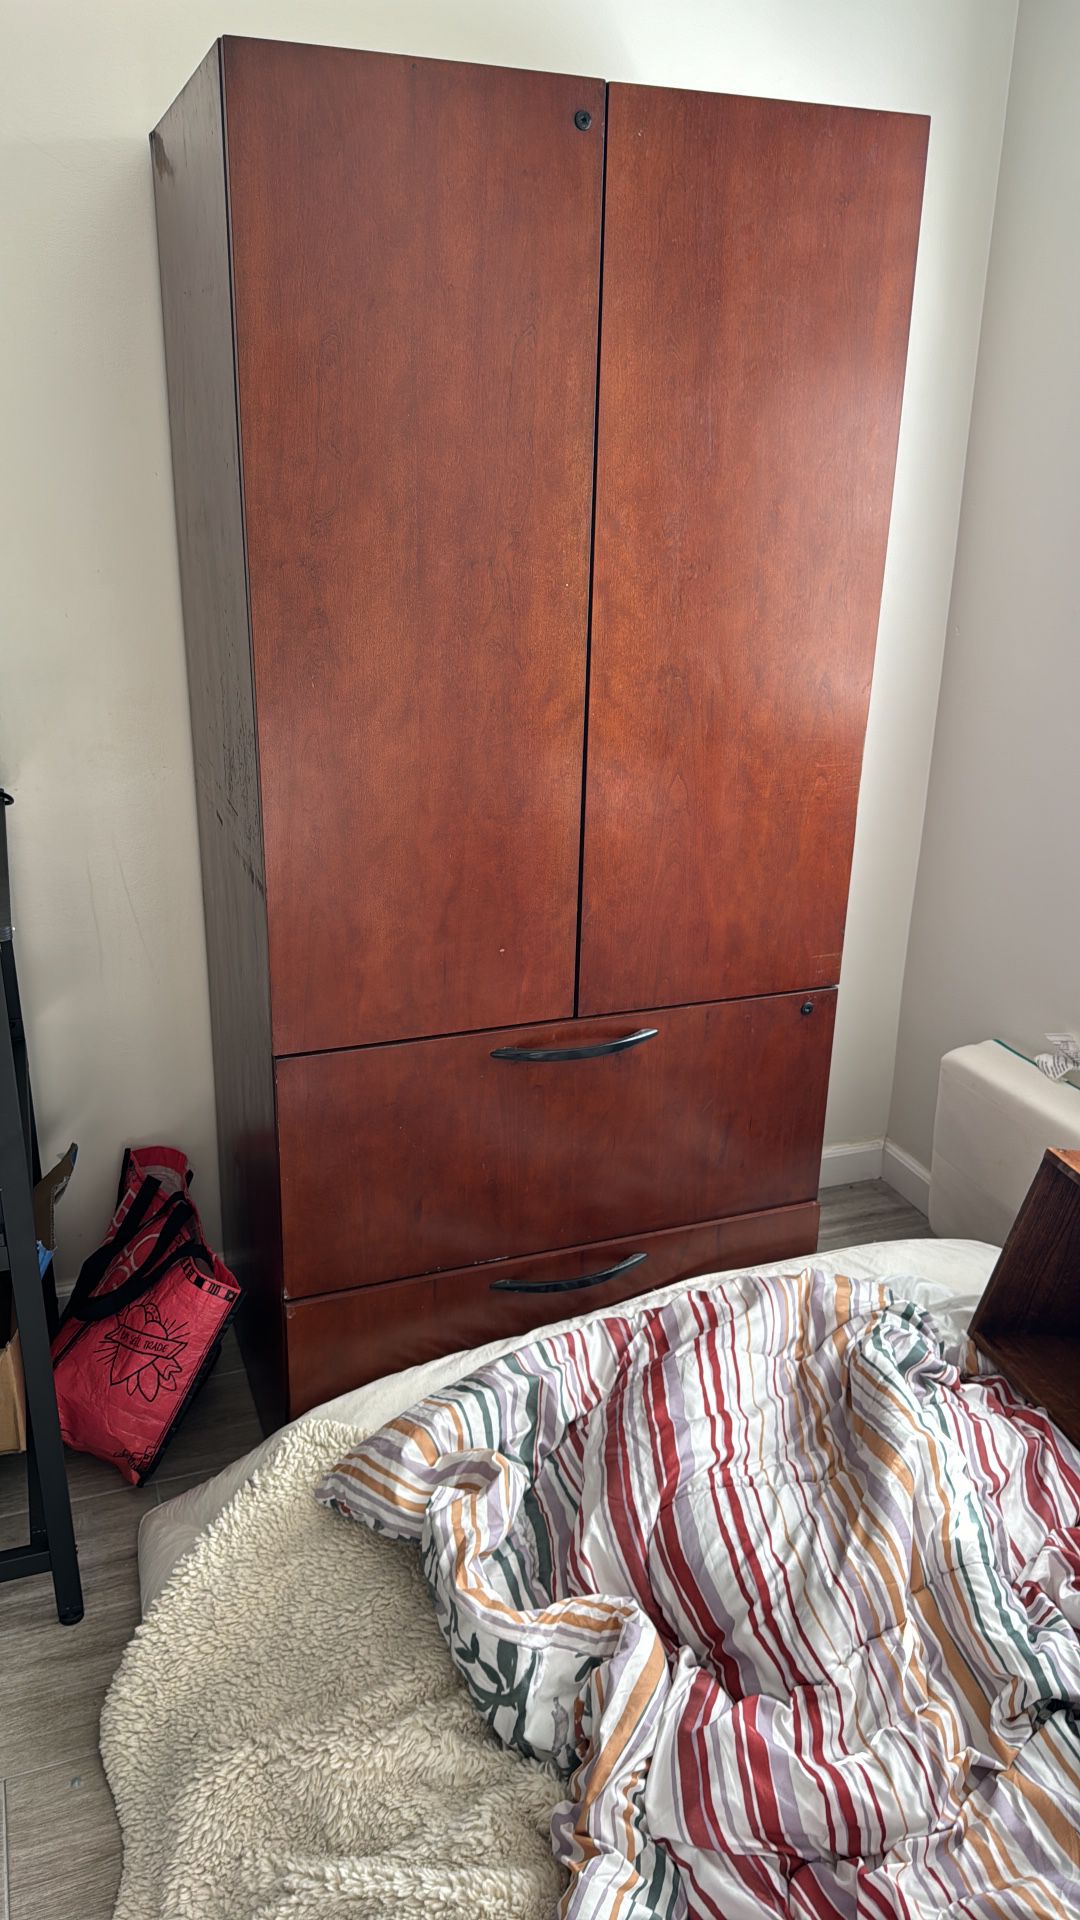 Dresser / Cabinet Cherry Wood $30